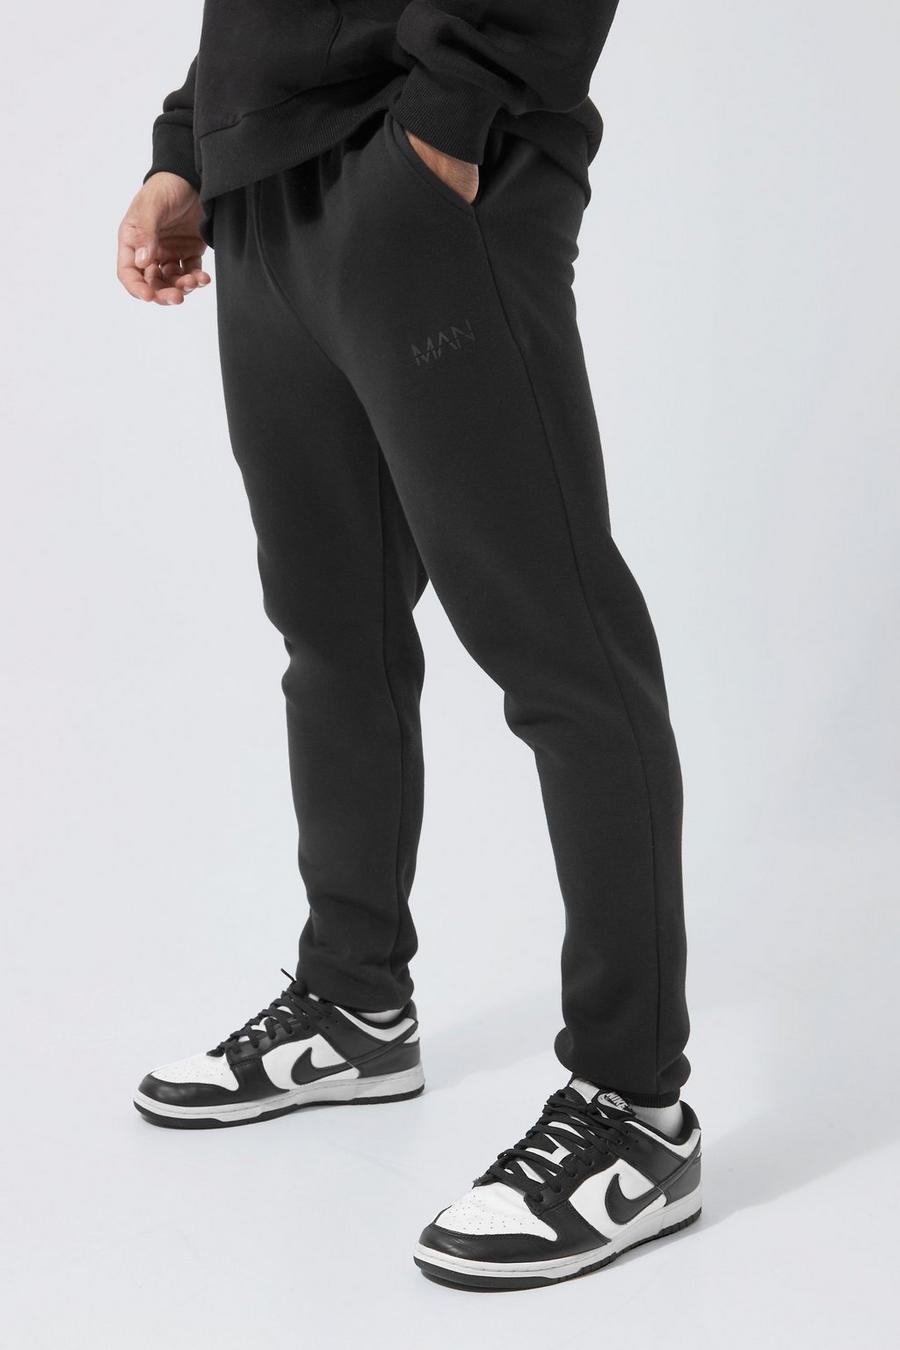 Pantalón deportivo pitillo con franja de letras MAN romanas y colores en bloque, Black image number 1